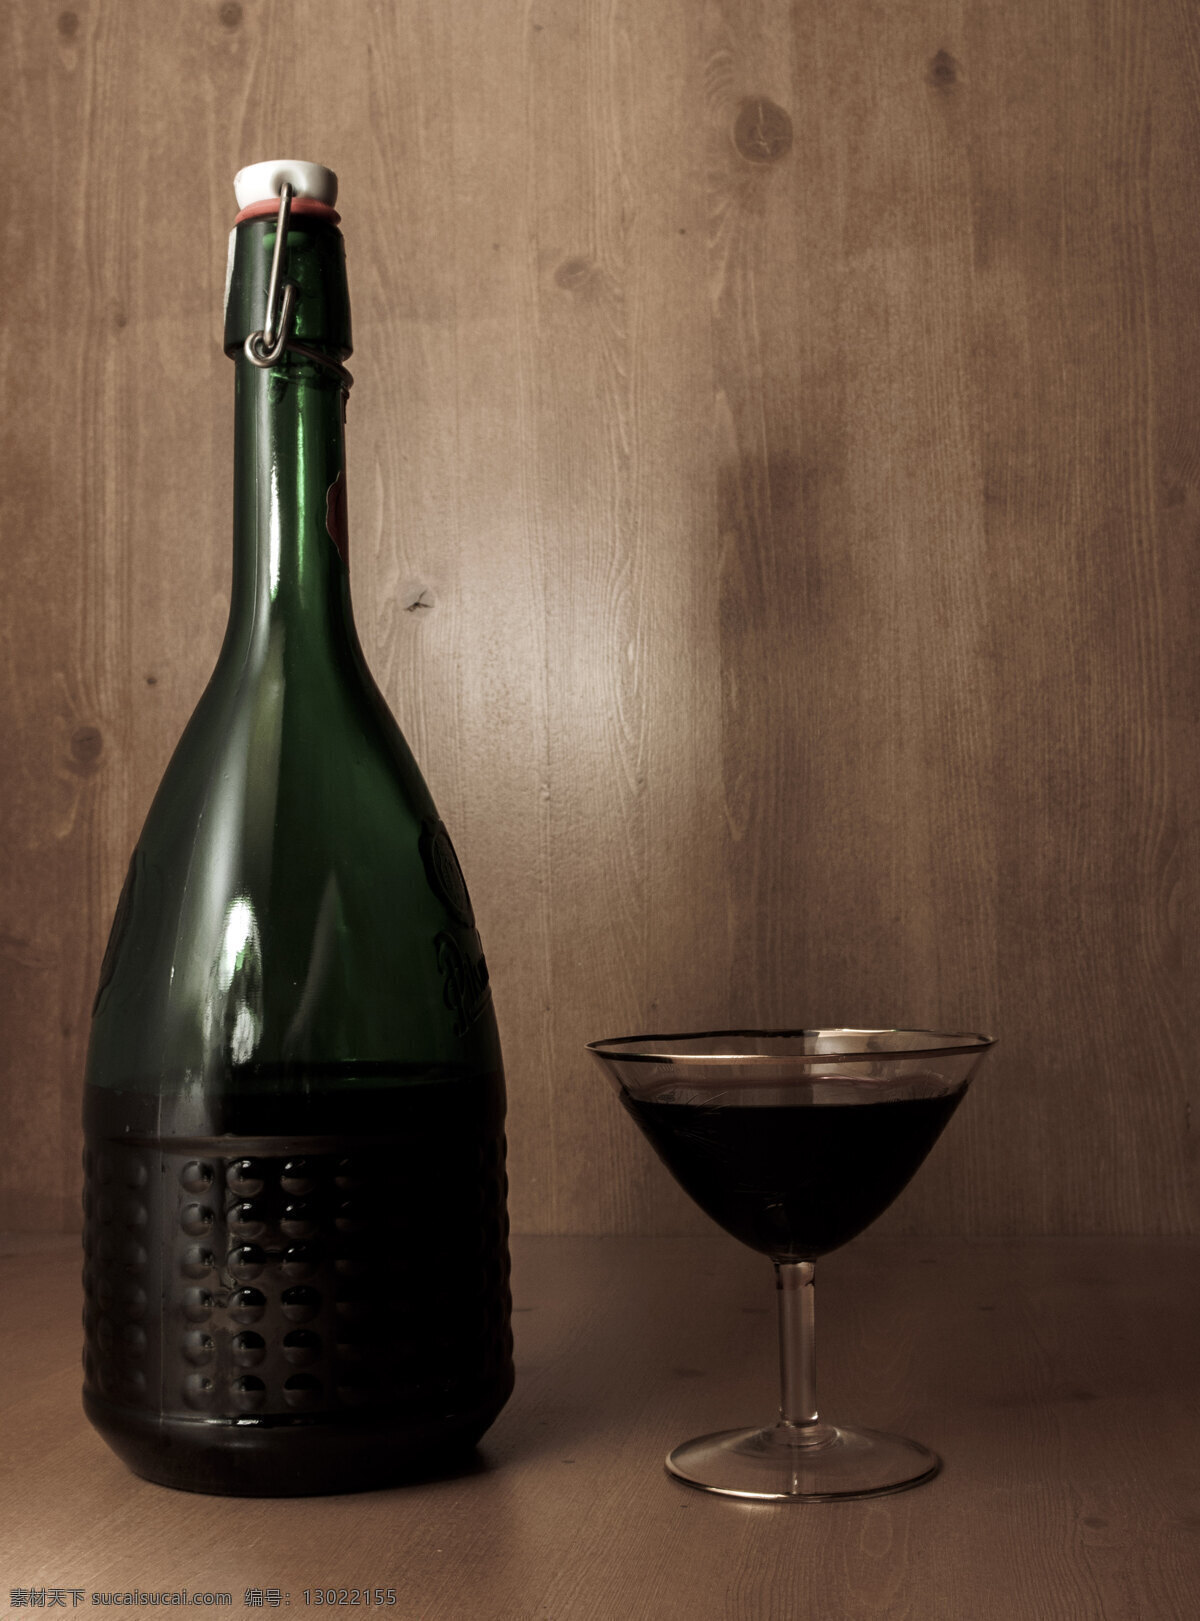 红酒瓶与酒杯 红酒瓶 酒杯 酒 静物 玻璃 生活百科 生活素材